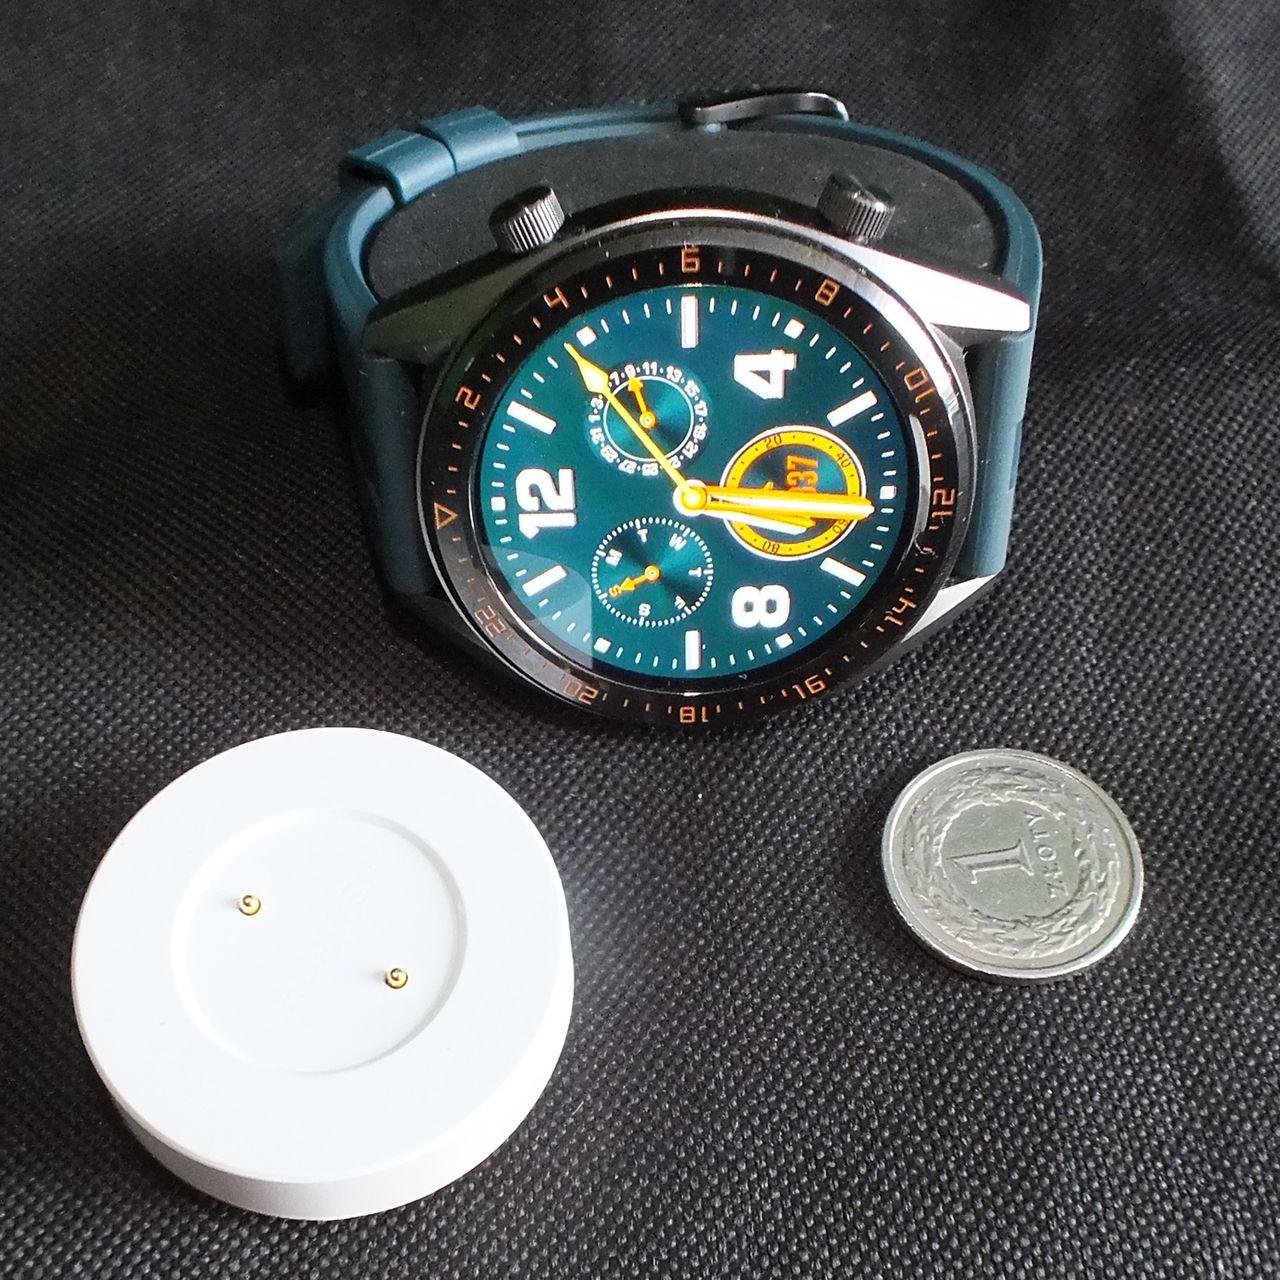 Wielkość zegarka i podstawki ładującej w porównaniu do jednozłotówki